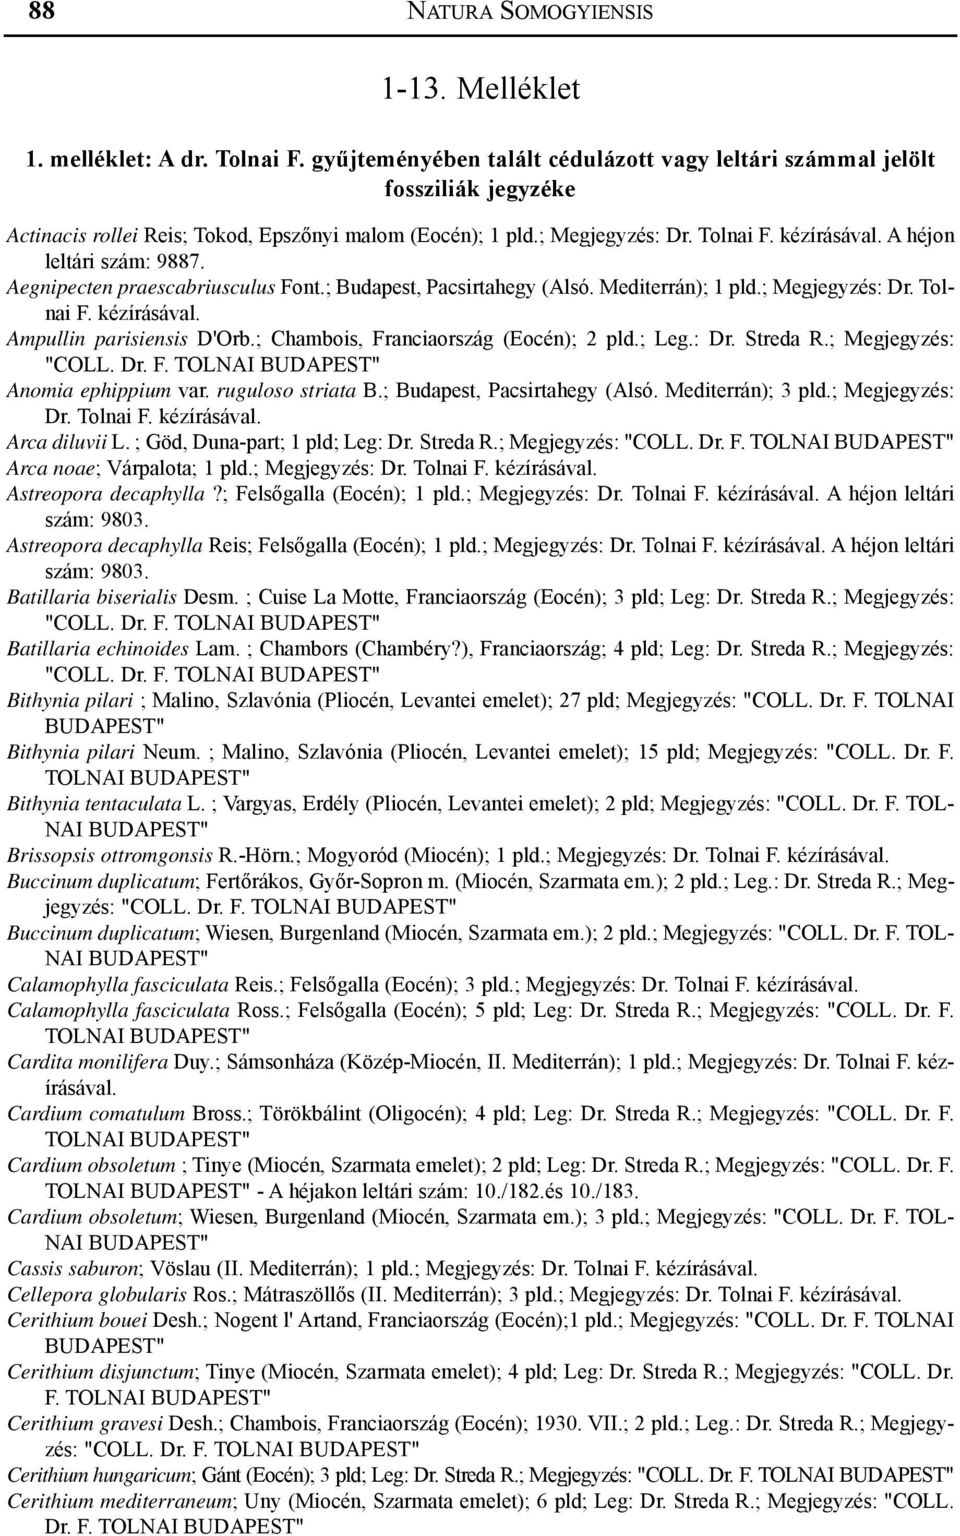 Aegnipecten praescabriusculus Font.; Budapest, Pacsirtahegy (Alsó. Mediterrán); 1 pld.; Megjegyzés: Dr. Tolnai Ampullin parisiensis D'Orb.; Chambois, Franciaország (Eocén); 2 pld.; Leg.: Dr. Streda R.